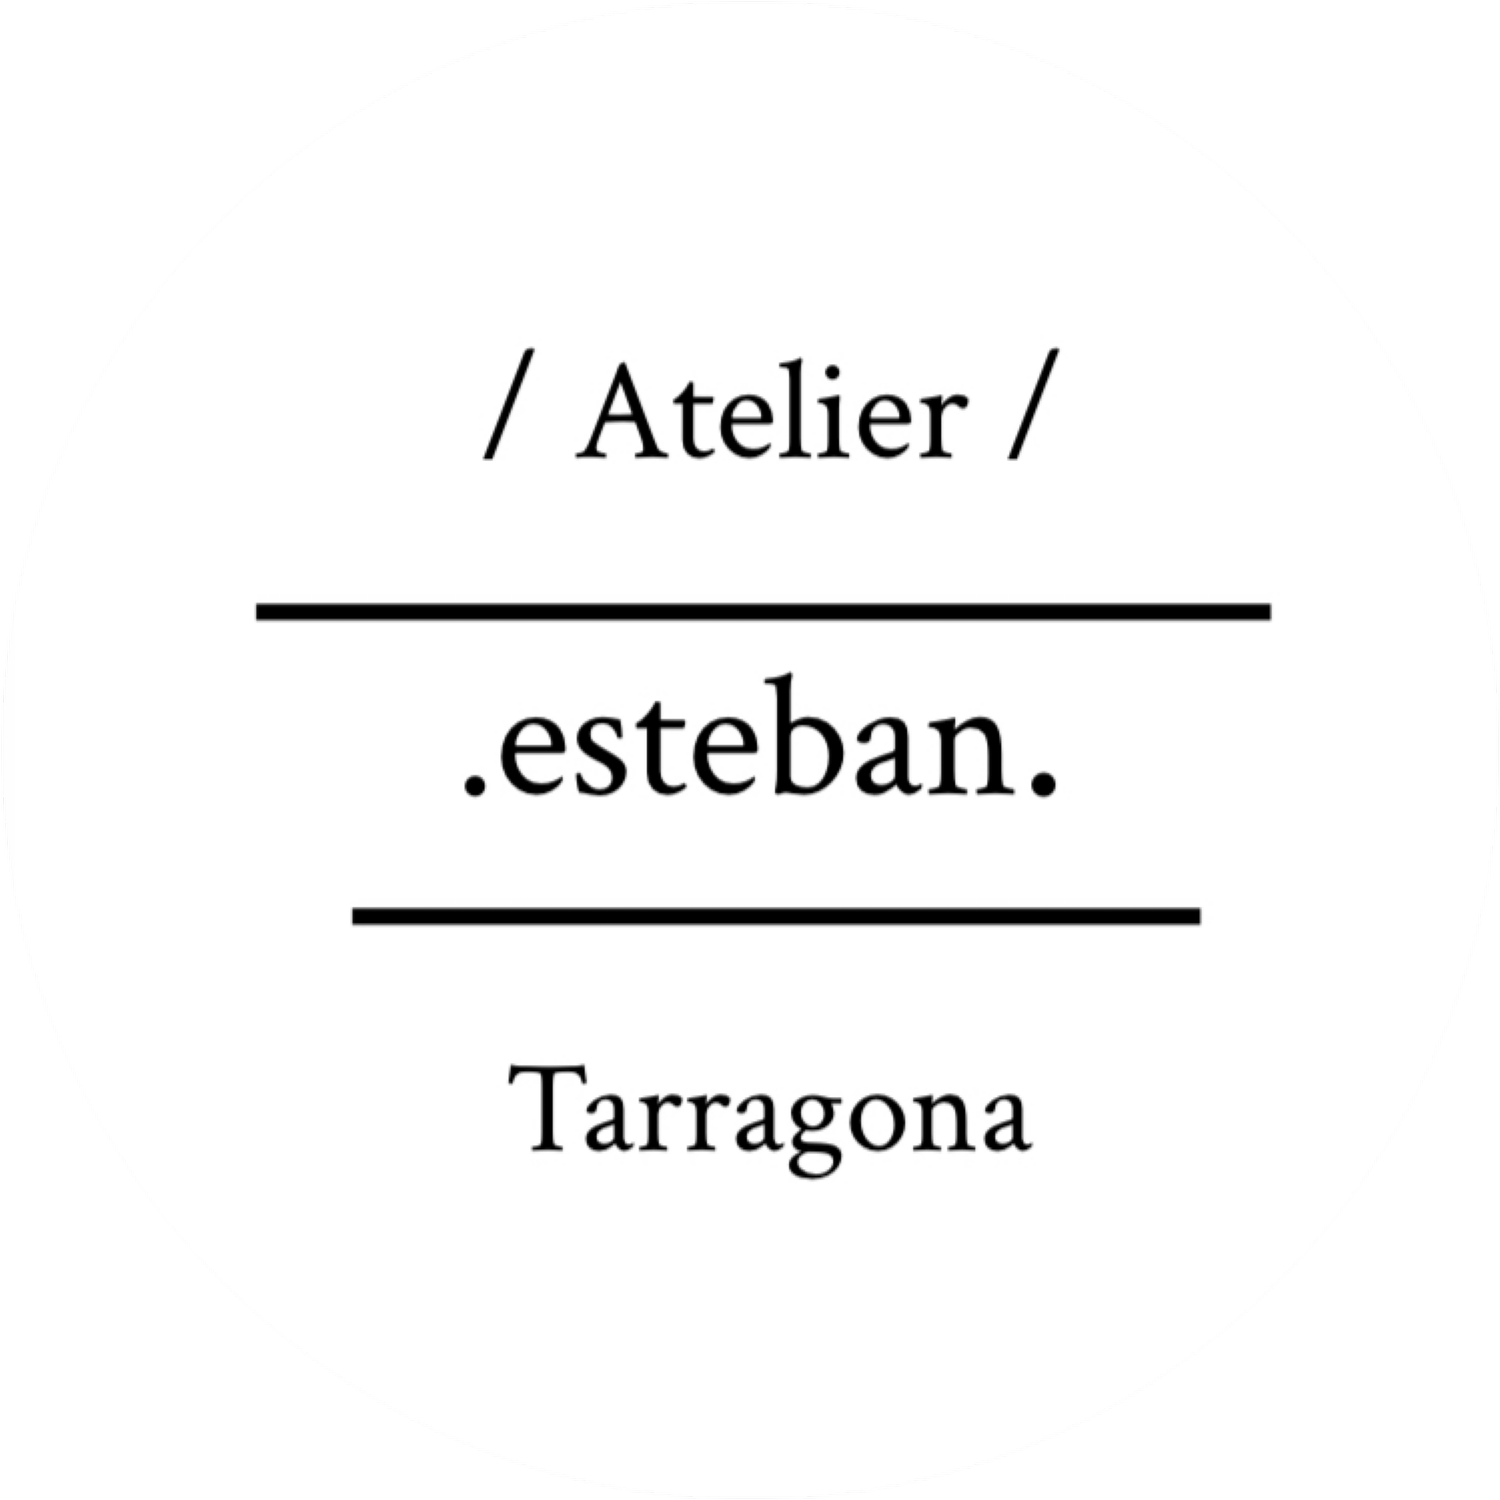 Atelier Esteban Tarragona